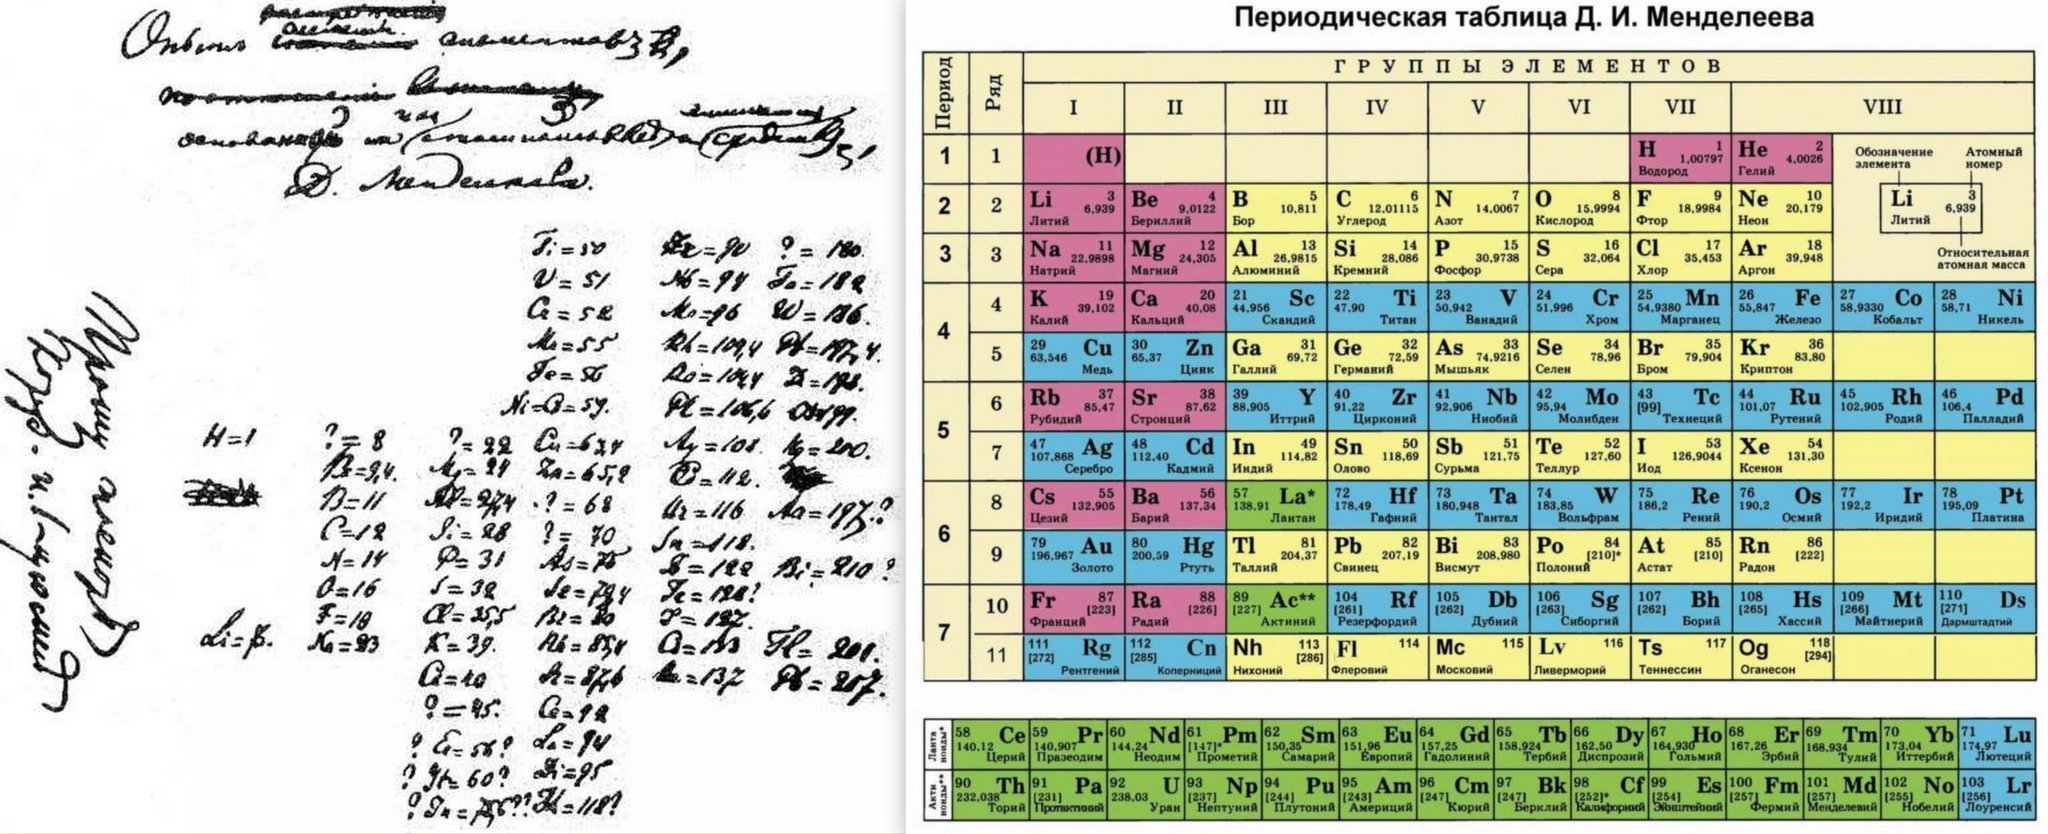 1 вариант таблицы менделеева. Периодическая система Менделеева 1869. Периодическая таблица Менделеева 1869. Первая таблица Менделеева 1869.